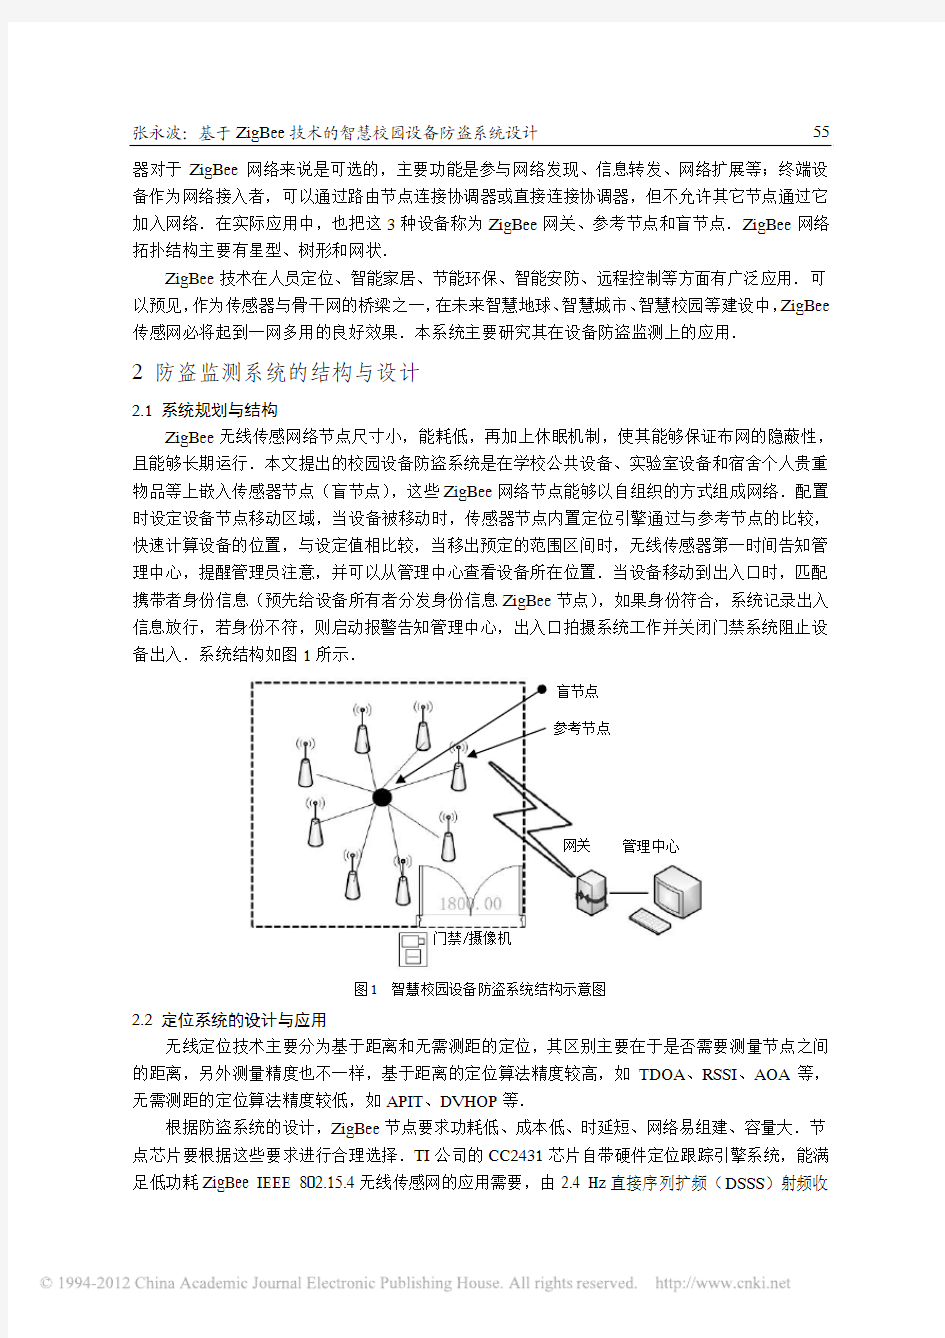 基于ZigBee技术的智慧校园设备防盗系统设计_张永波